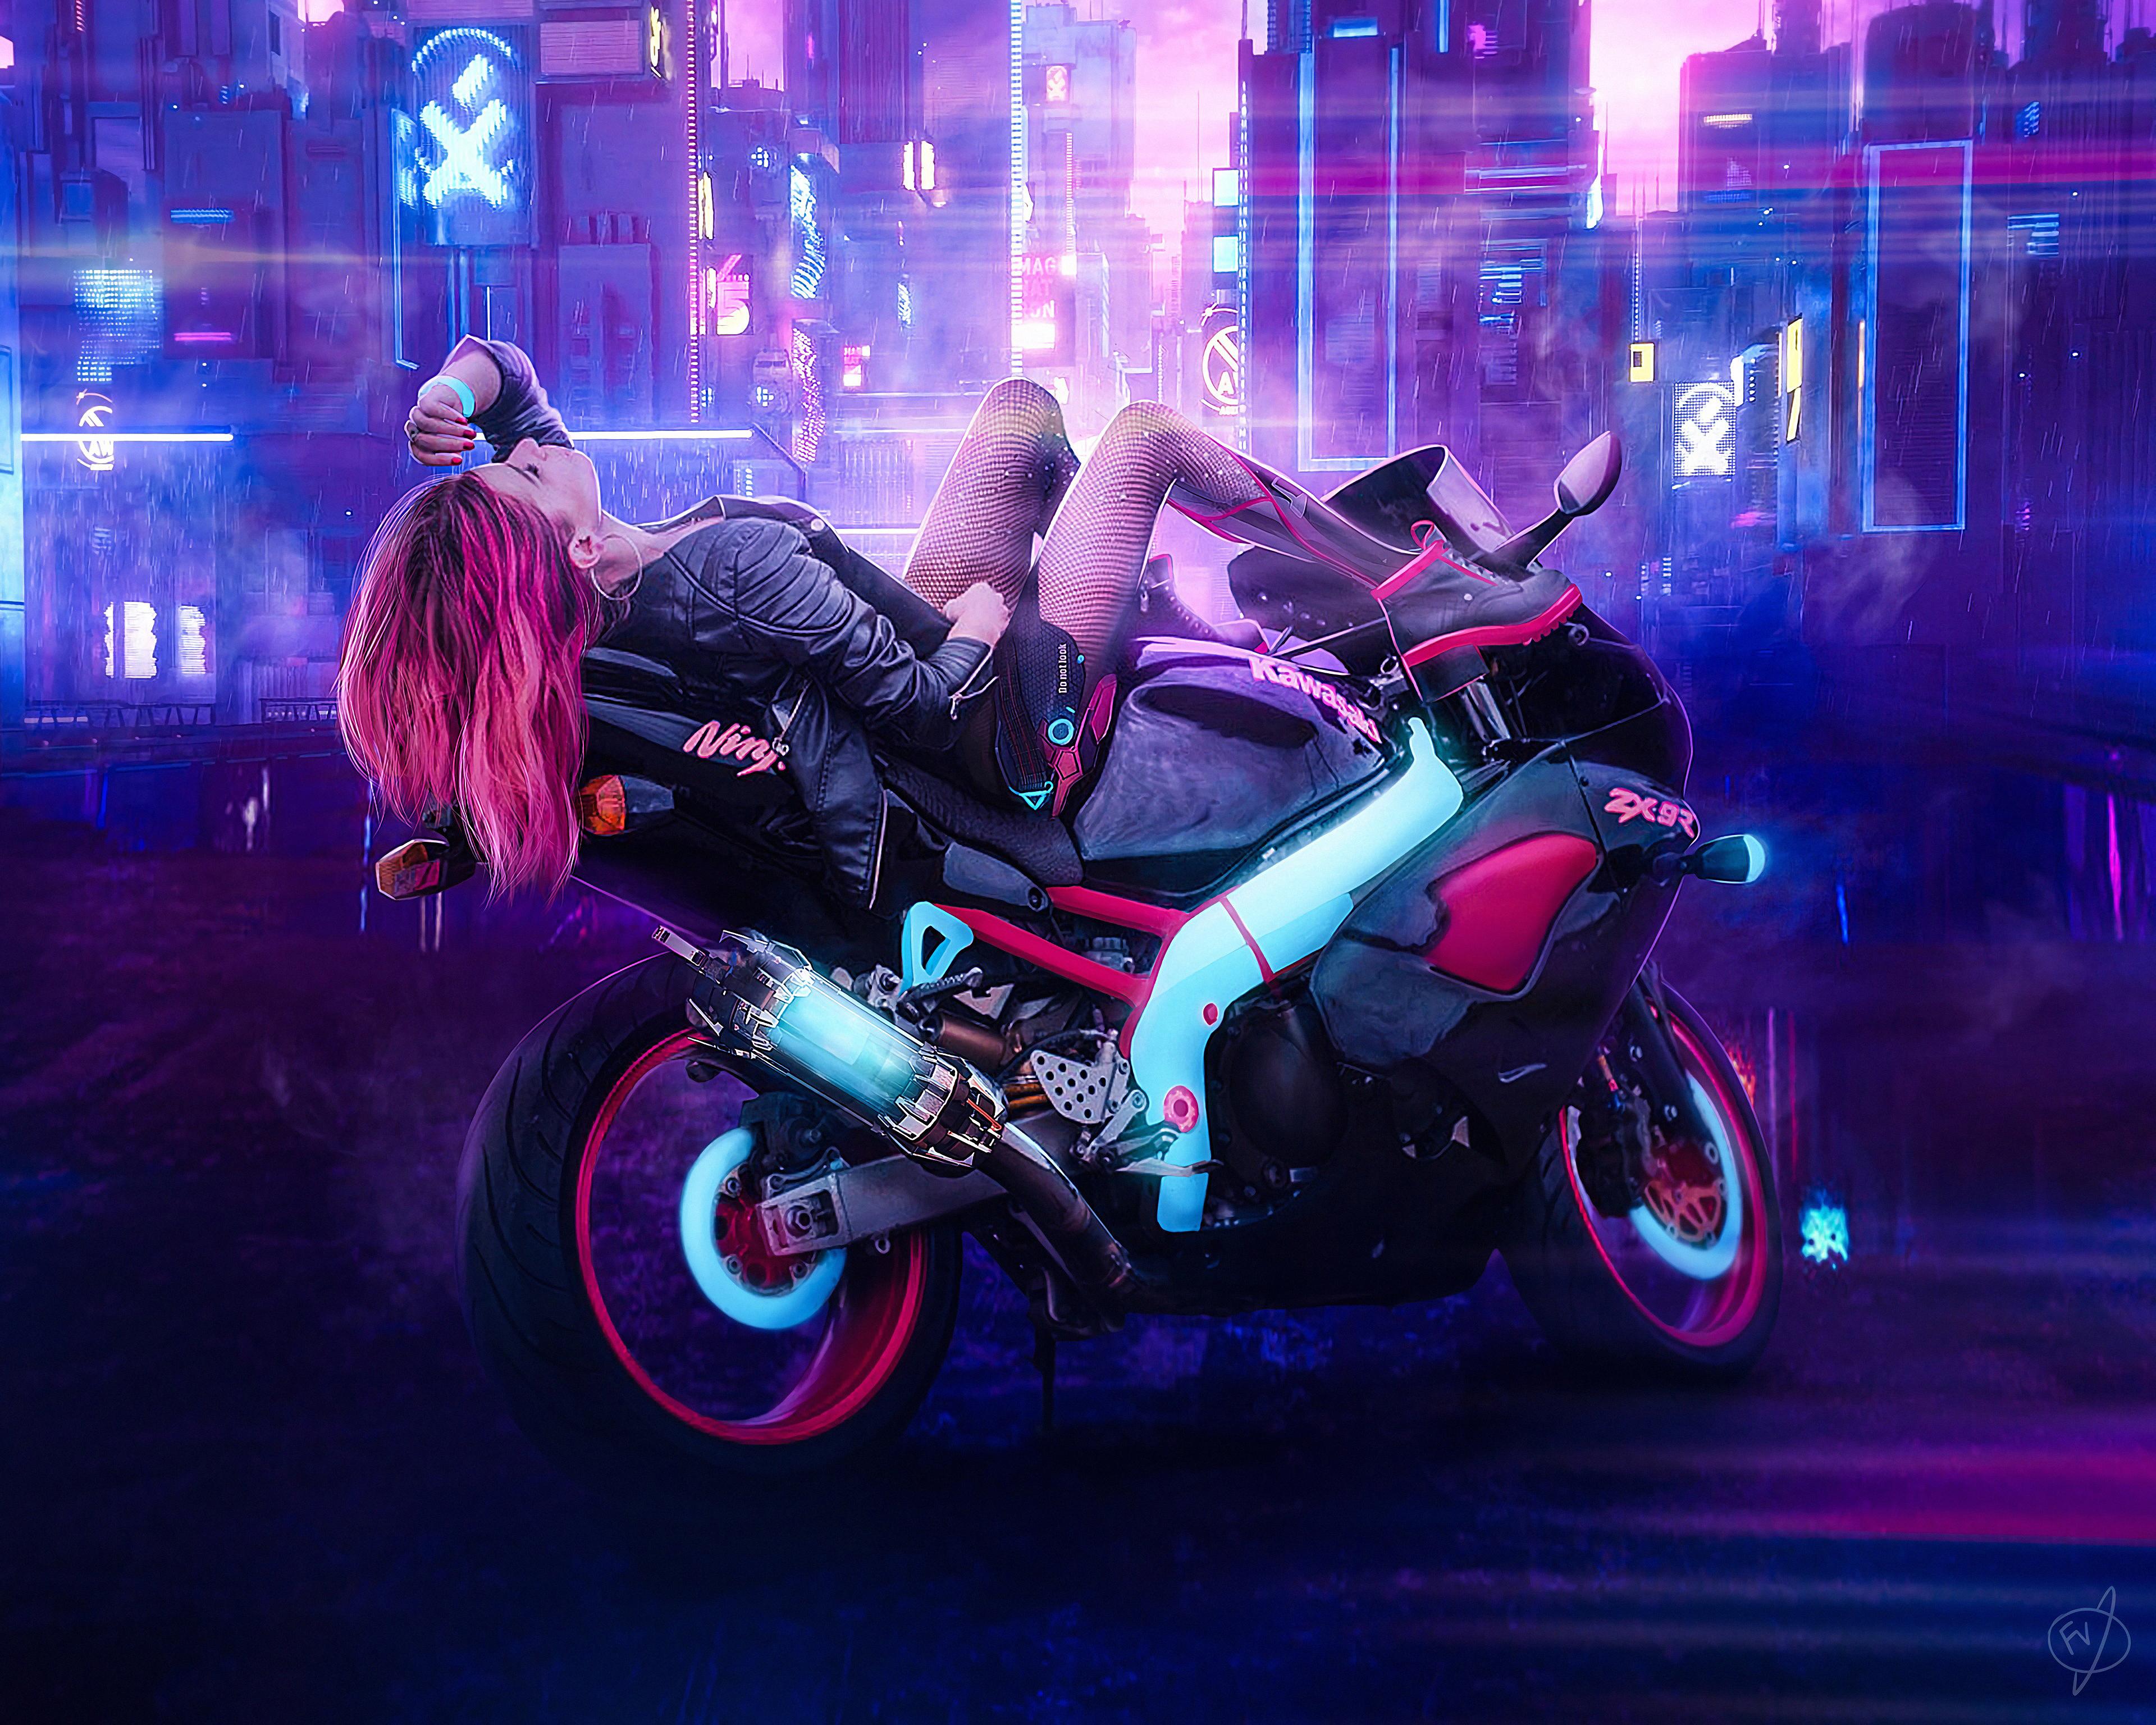 Cyberpunk Girl On Bike, HD Artist, 4k Wallpaper, Image